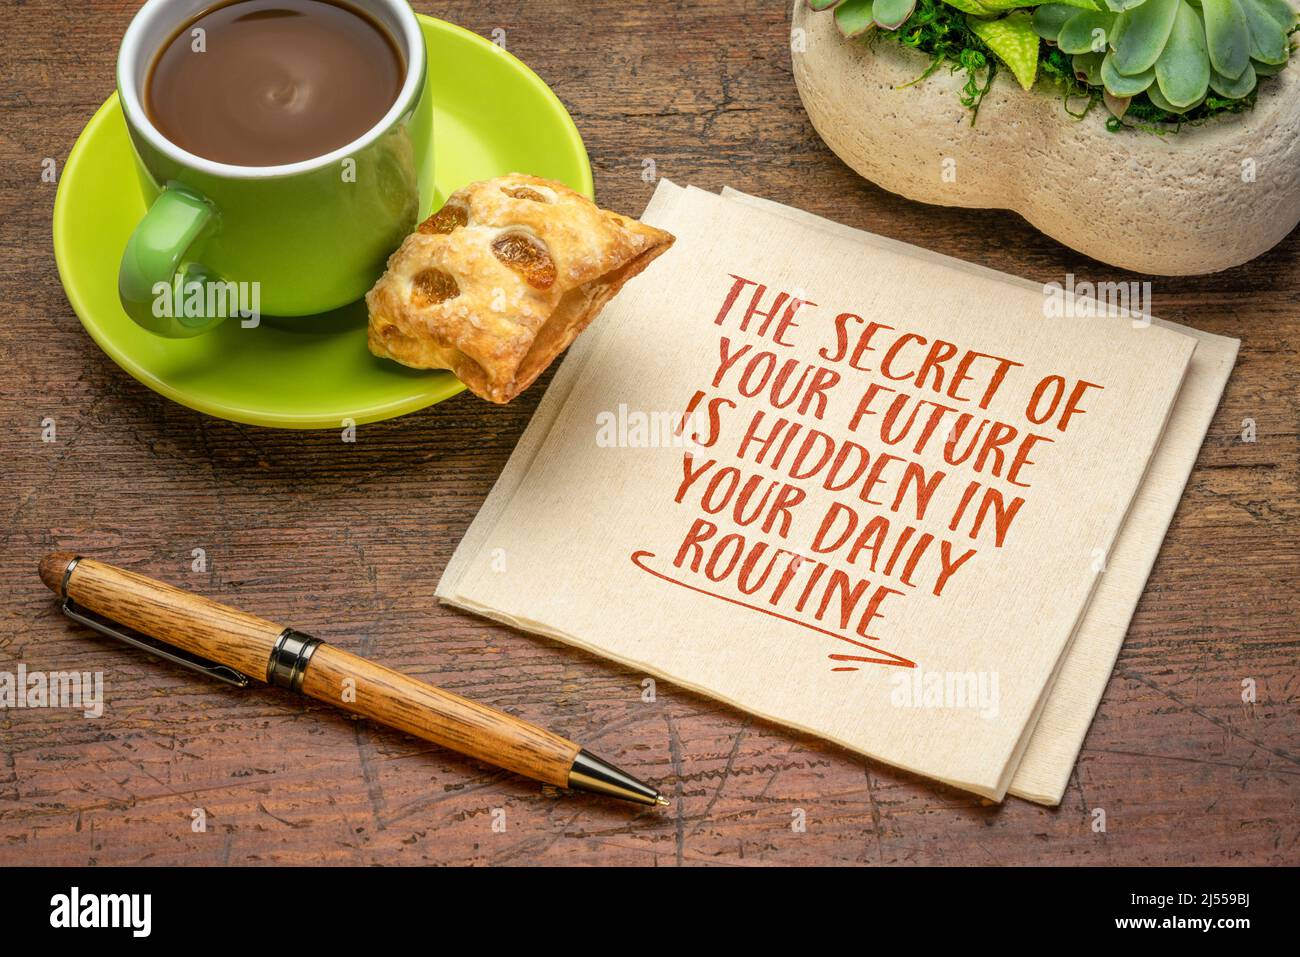 il segreto del vostro futuro è nascosto nella vostra routine quotidiana - scrittura a mano ispiratrice su un tovagliolo con una tazza di caffè, stile di vita e sviluppo personale Foto Stock